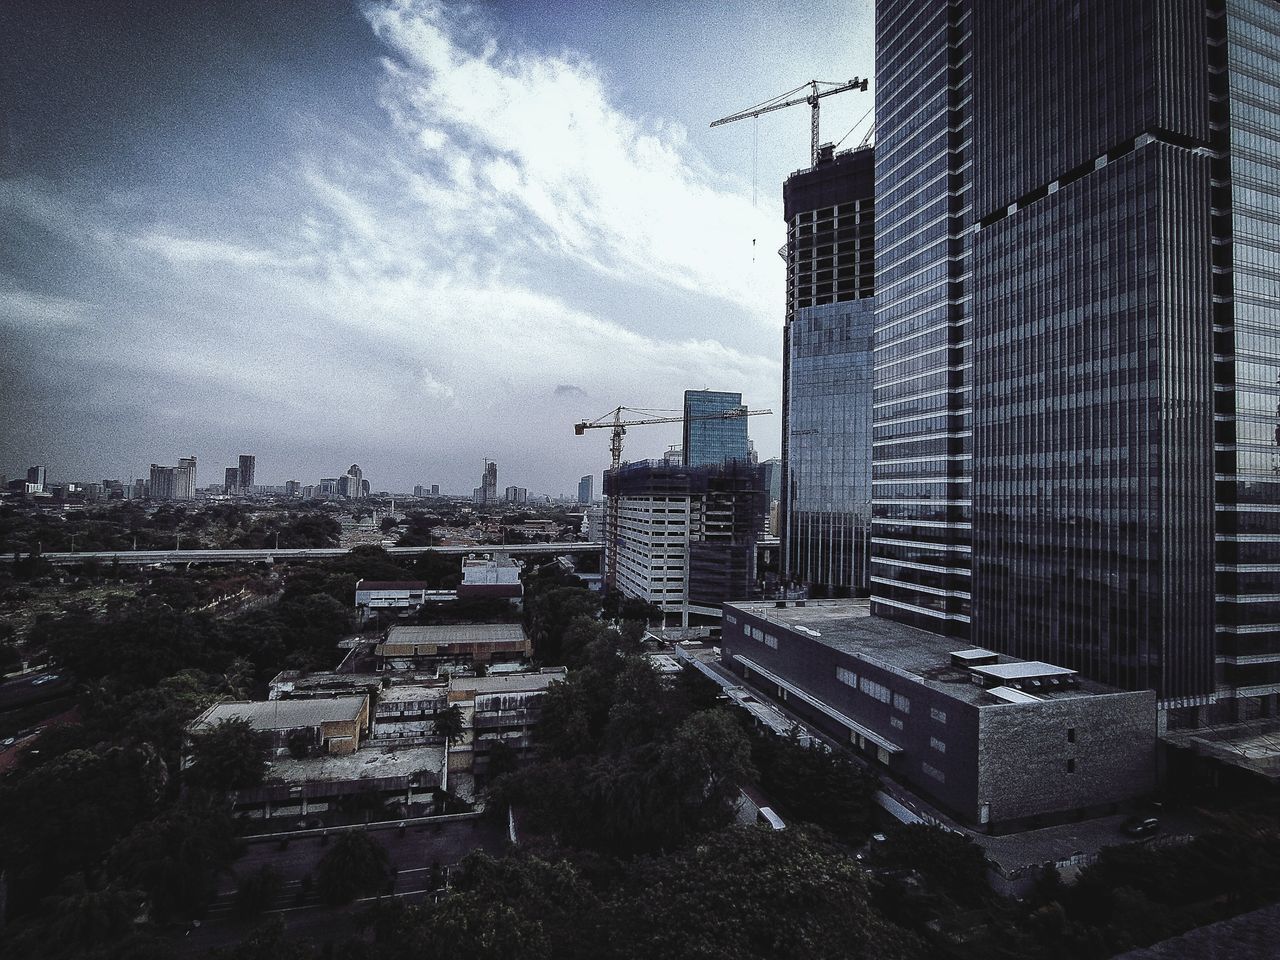 BUILDINGS AGAINST SKY IN CITY